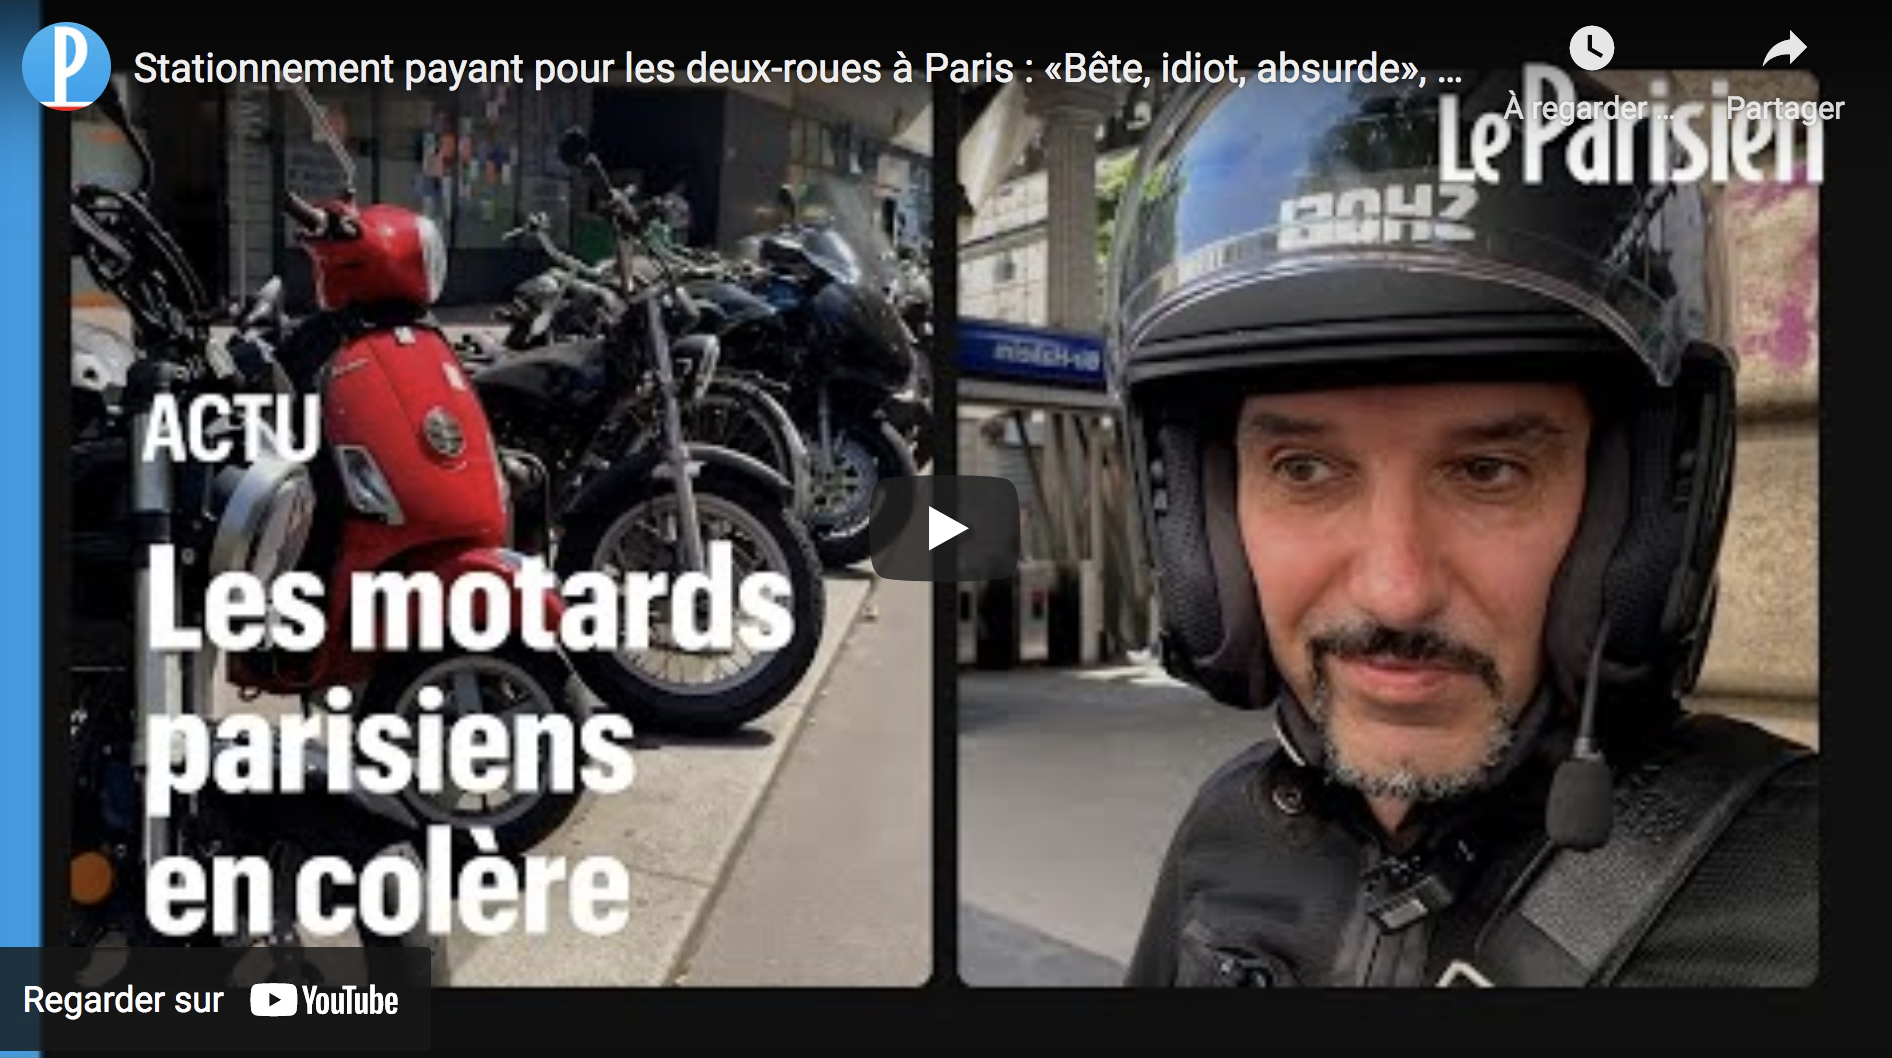 Stationnement payant pour les deux-roues à Paris : « Bête, idiot, absurde », selon des motards (VIDÉO)